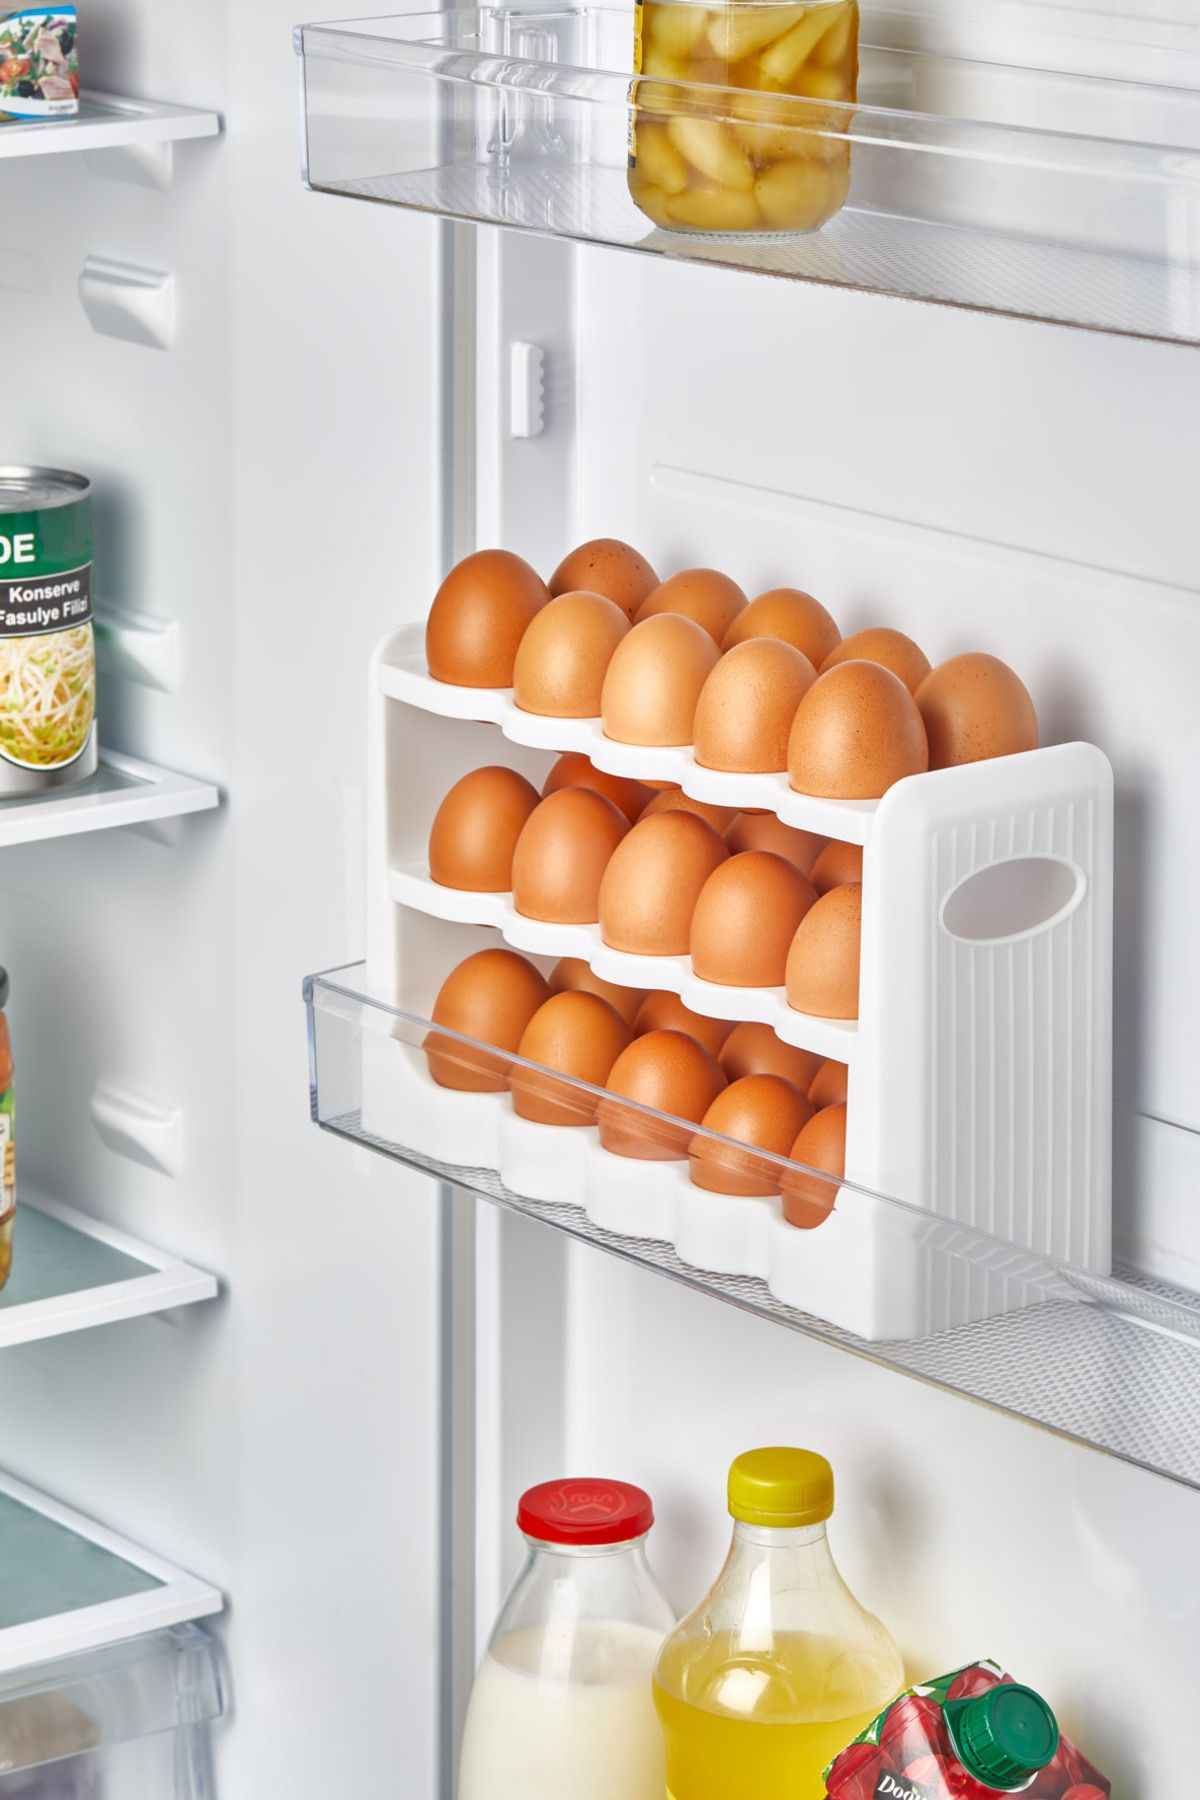 Pazarika 30 Bölmeli Yumurta Kutusu 3 Katlı Yumurtalık Buzdolabı Organizeri Saklama Kabı